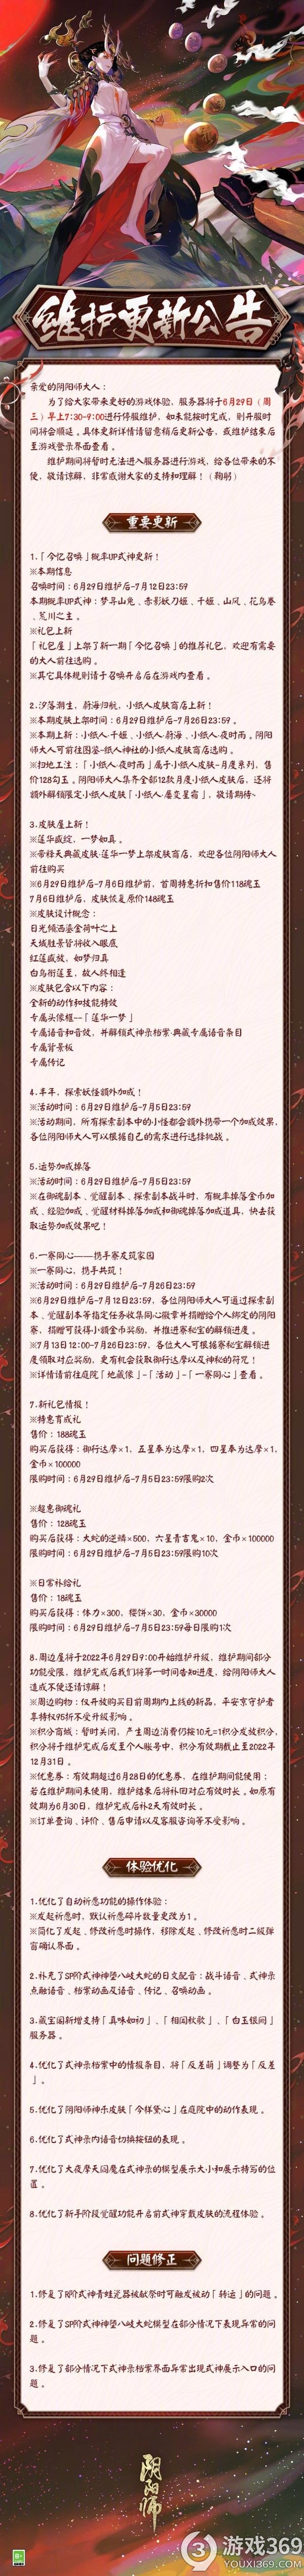 阴阳师正式服6月29日更新了什么 阴阳师正式服6月29日更新内容